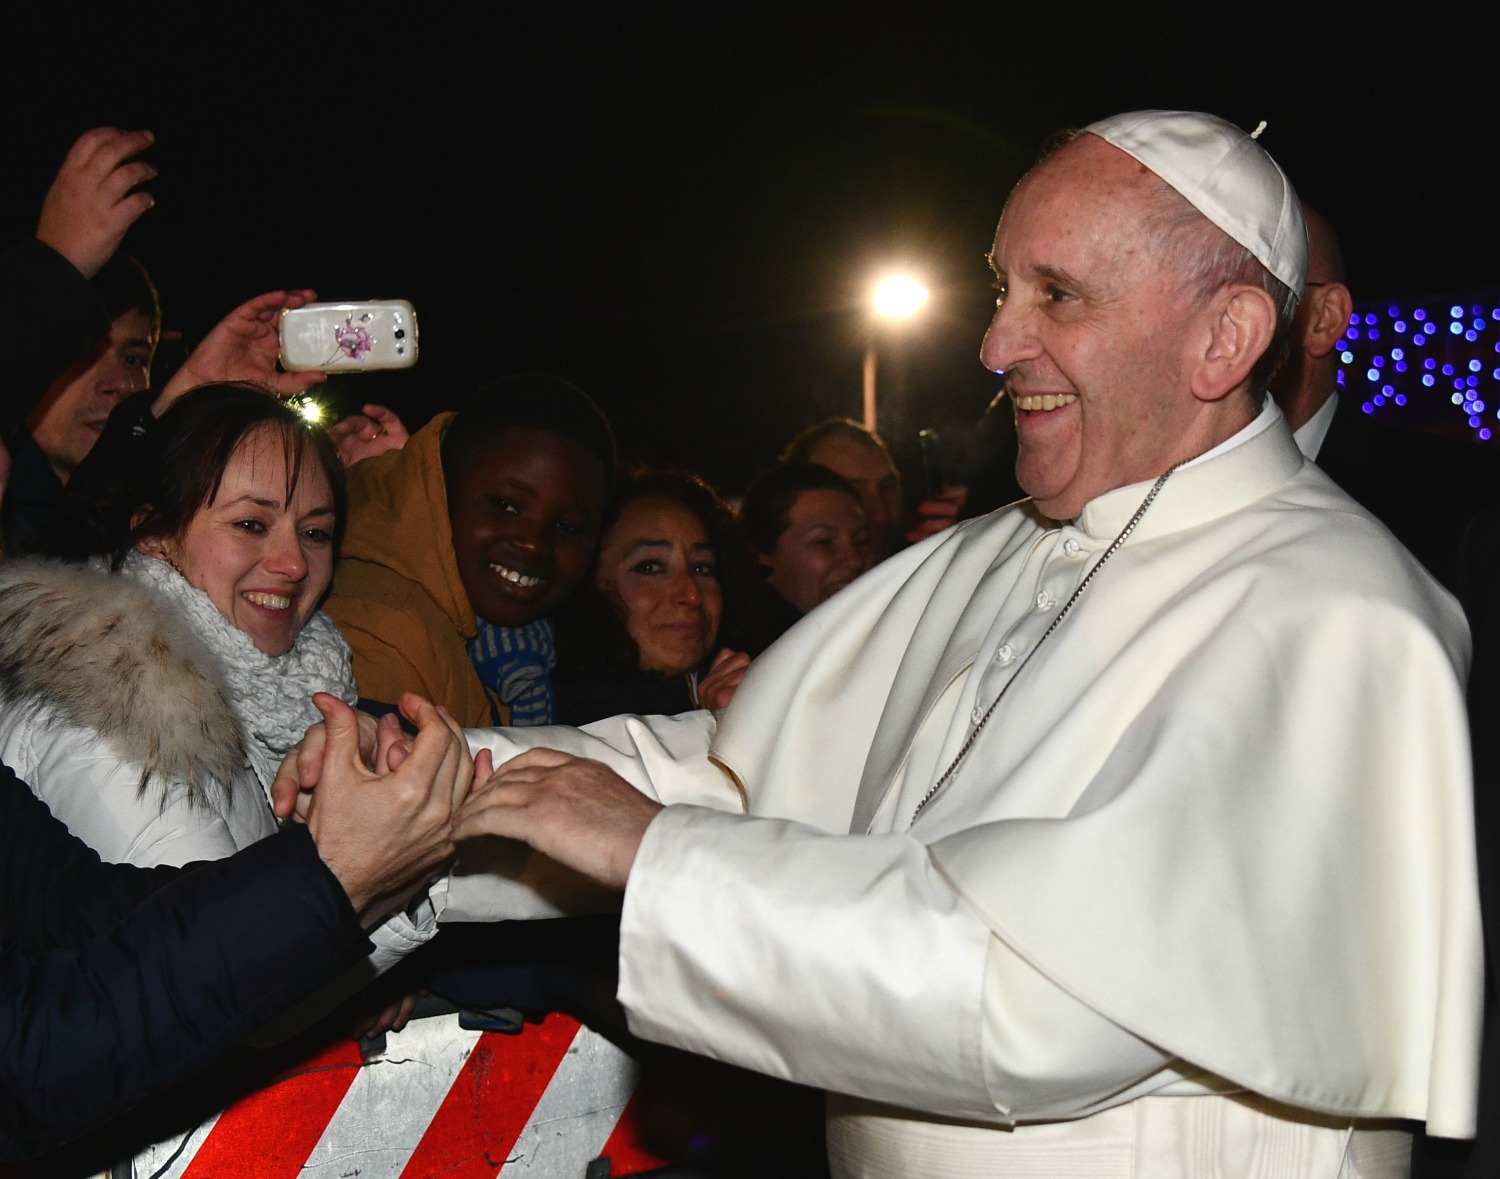 El Papa, durante uno de sus encuentros con feligreses. (Foto: Vincenzo Pinto / AFP)